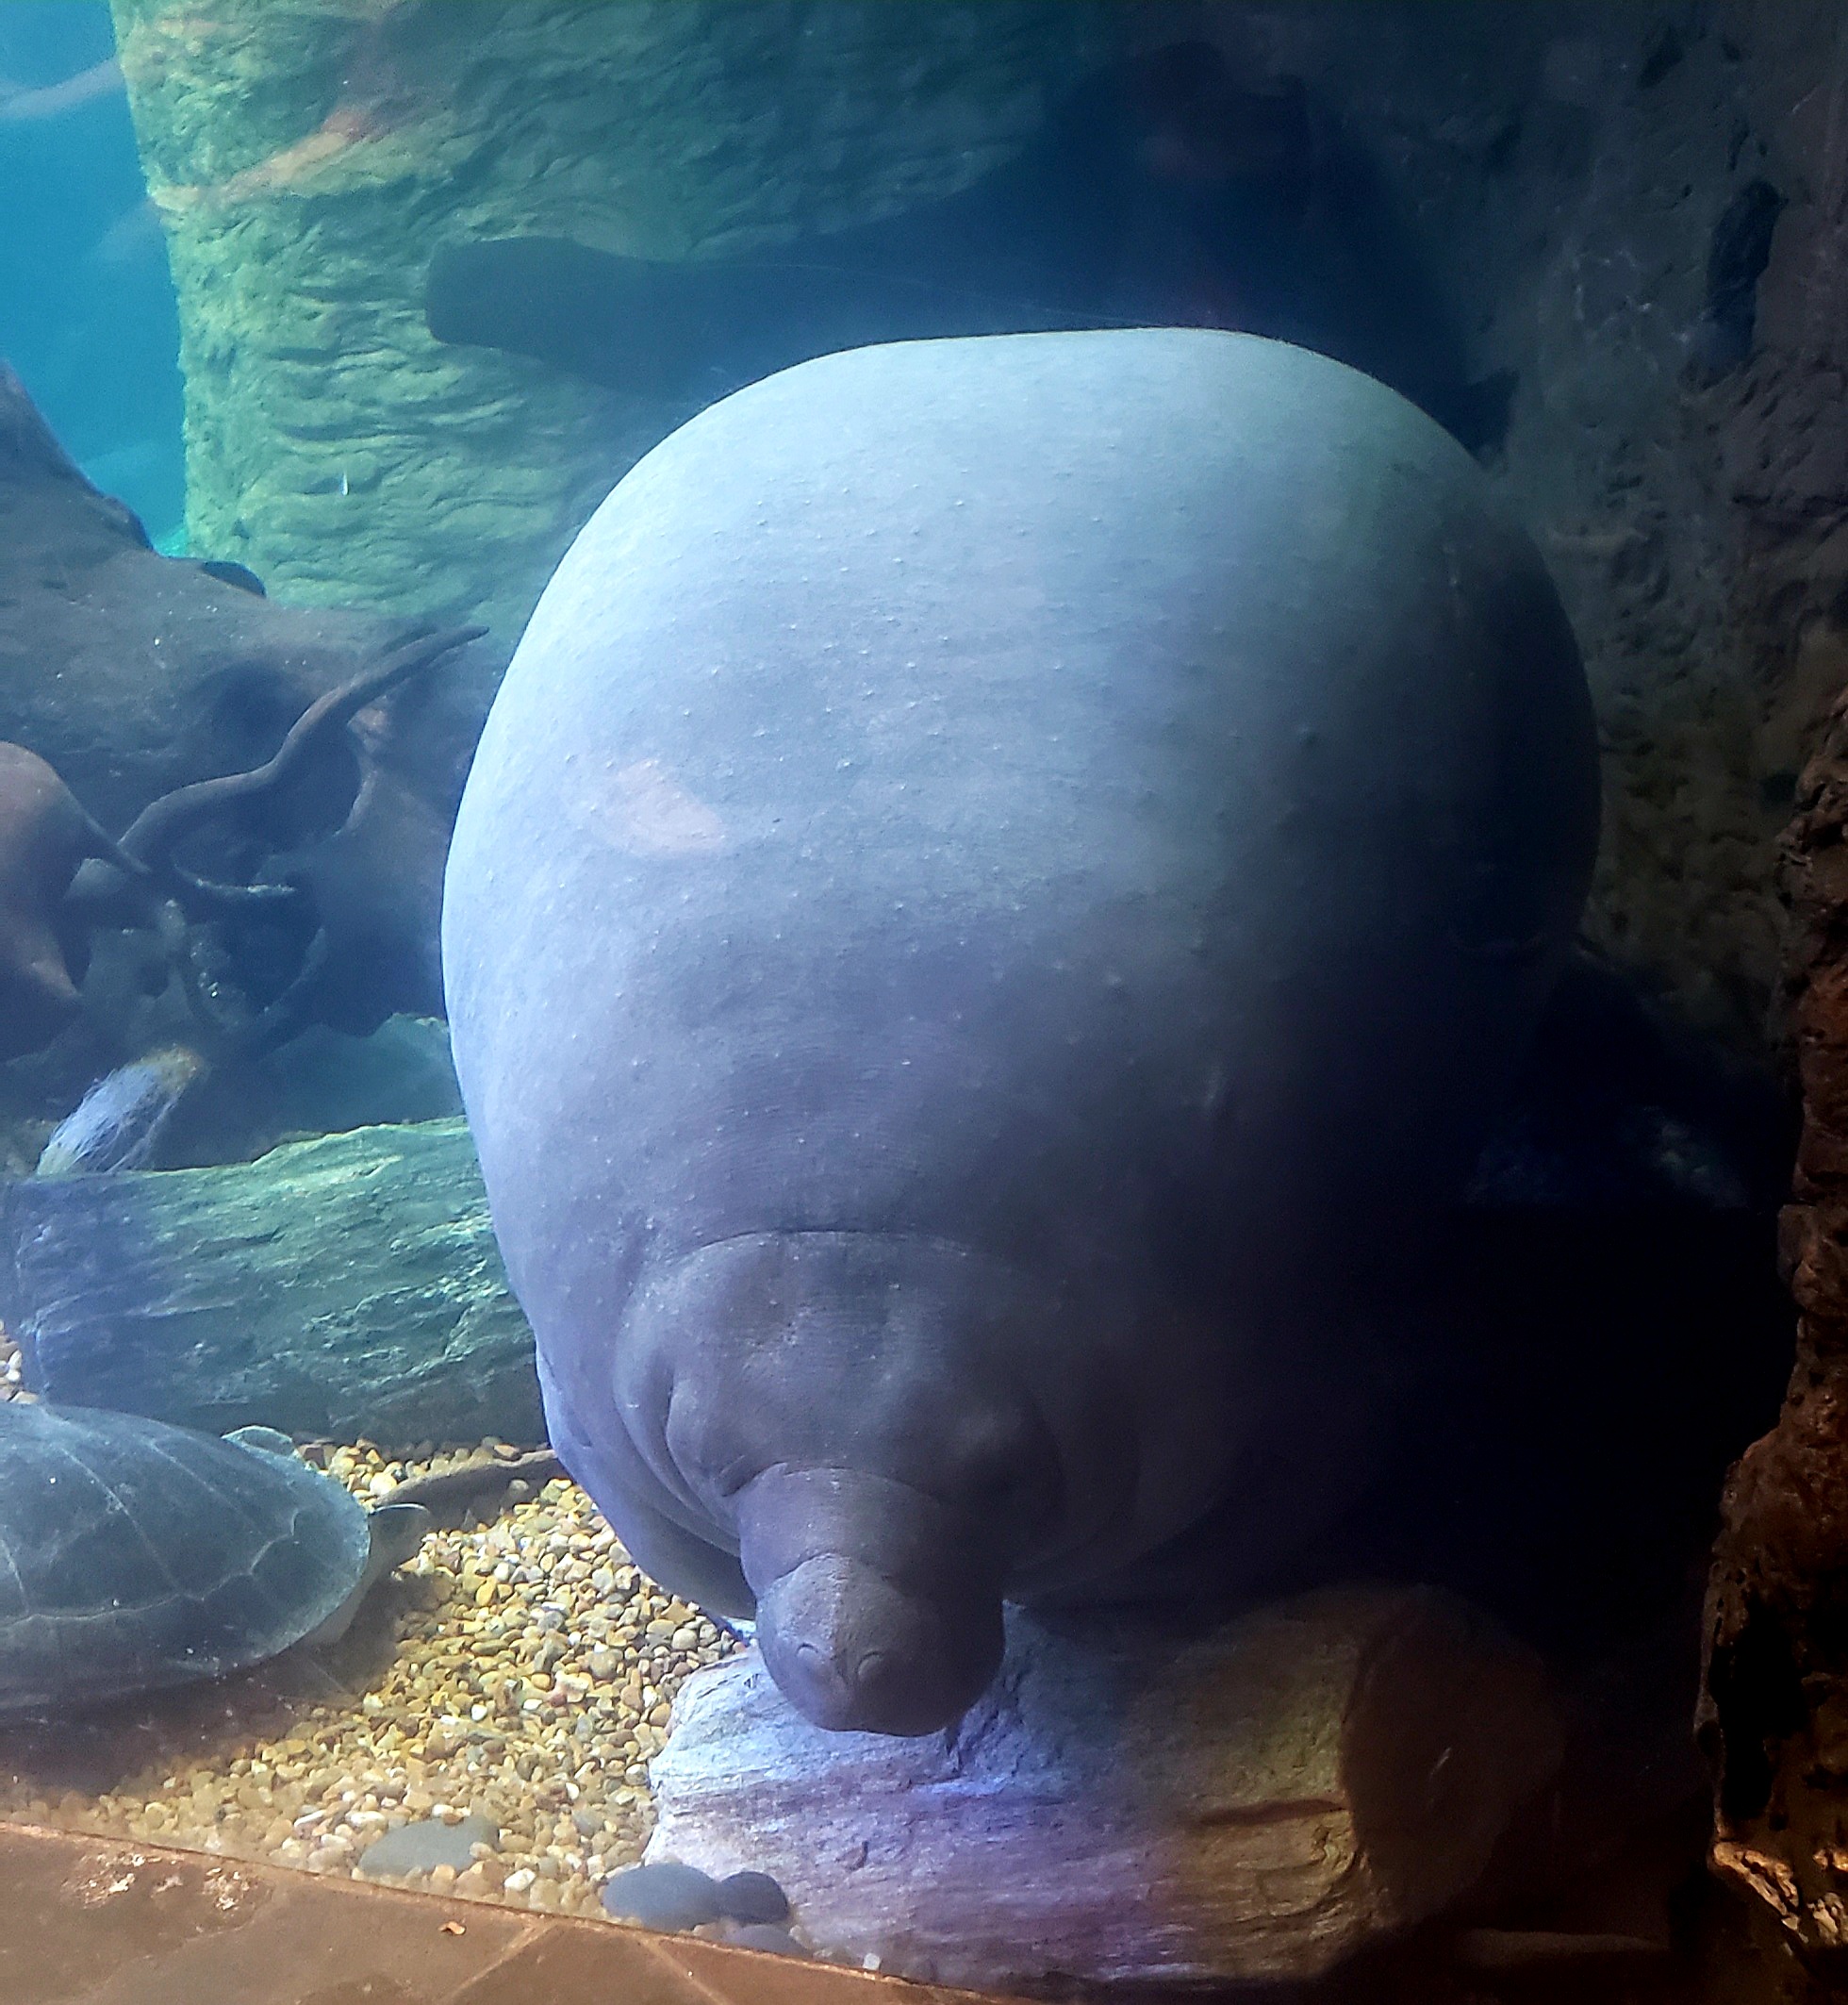 The Coolest Aquarium I’ve Ever Seen